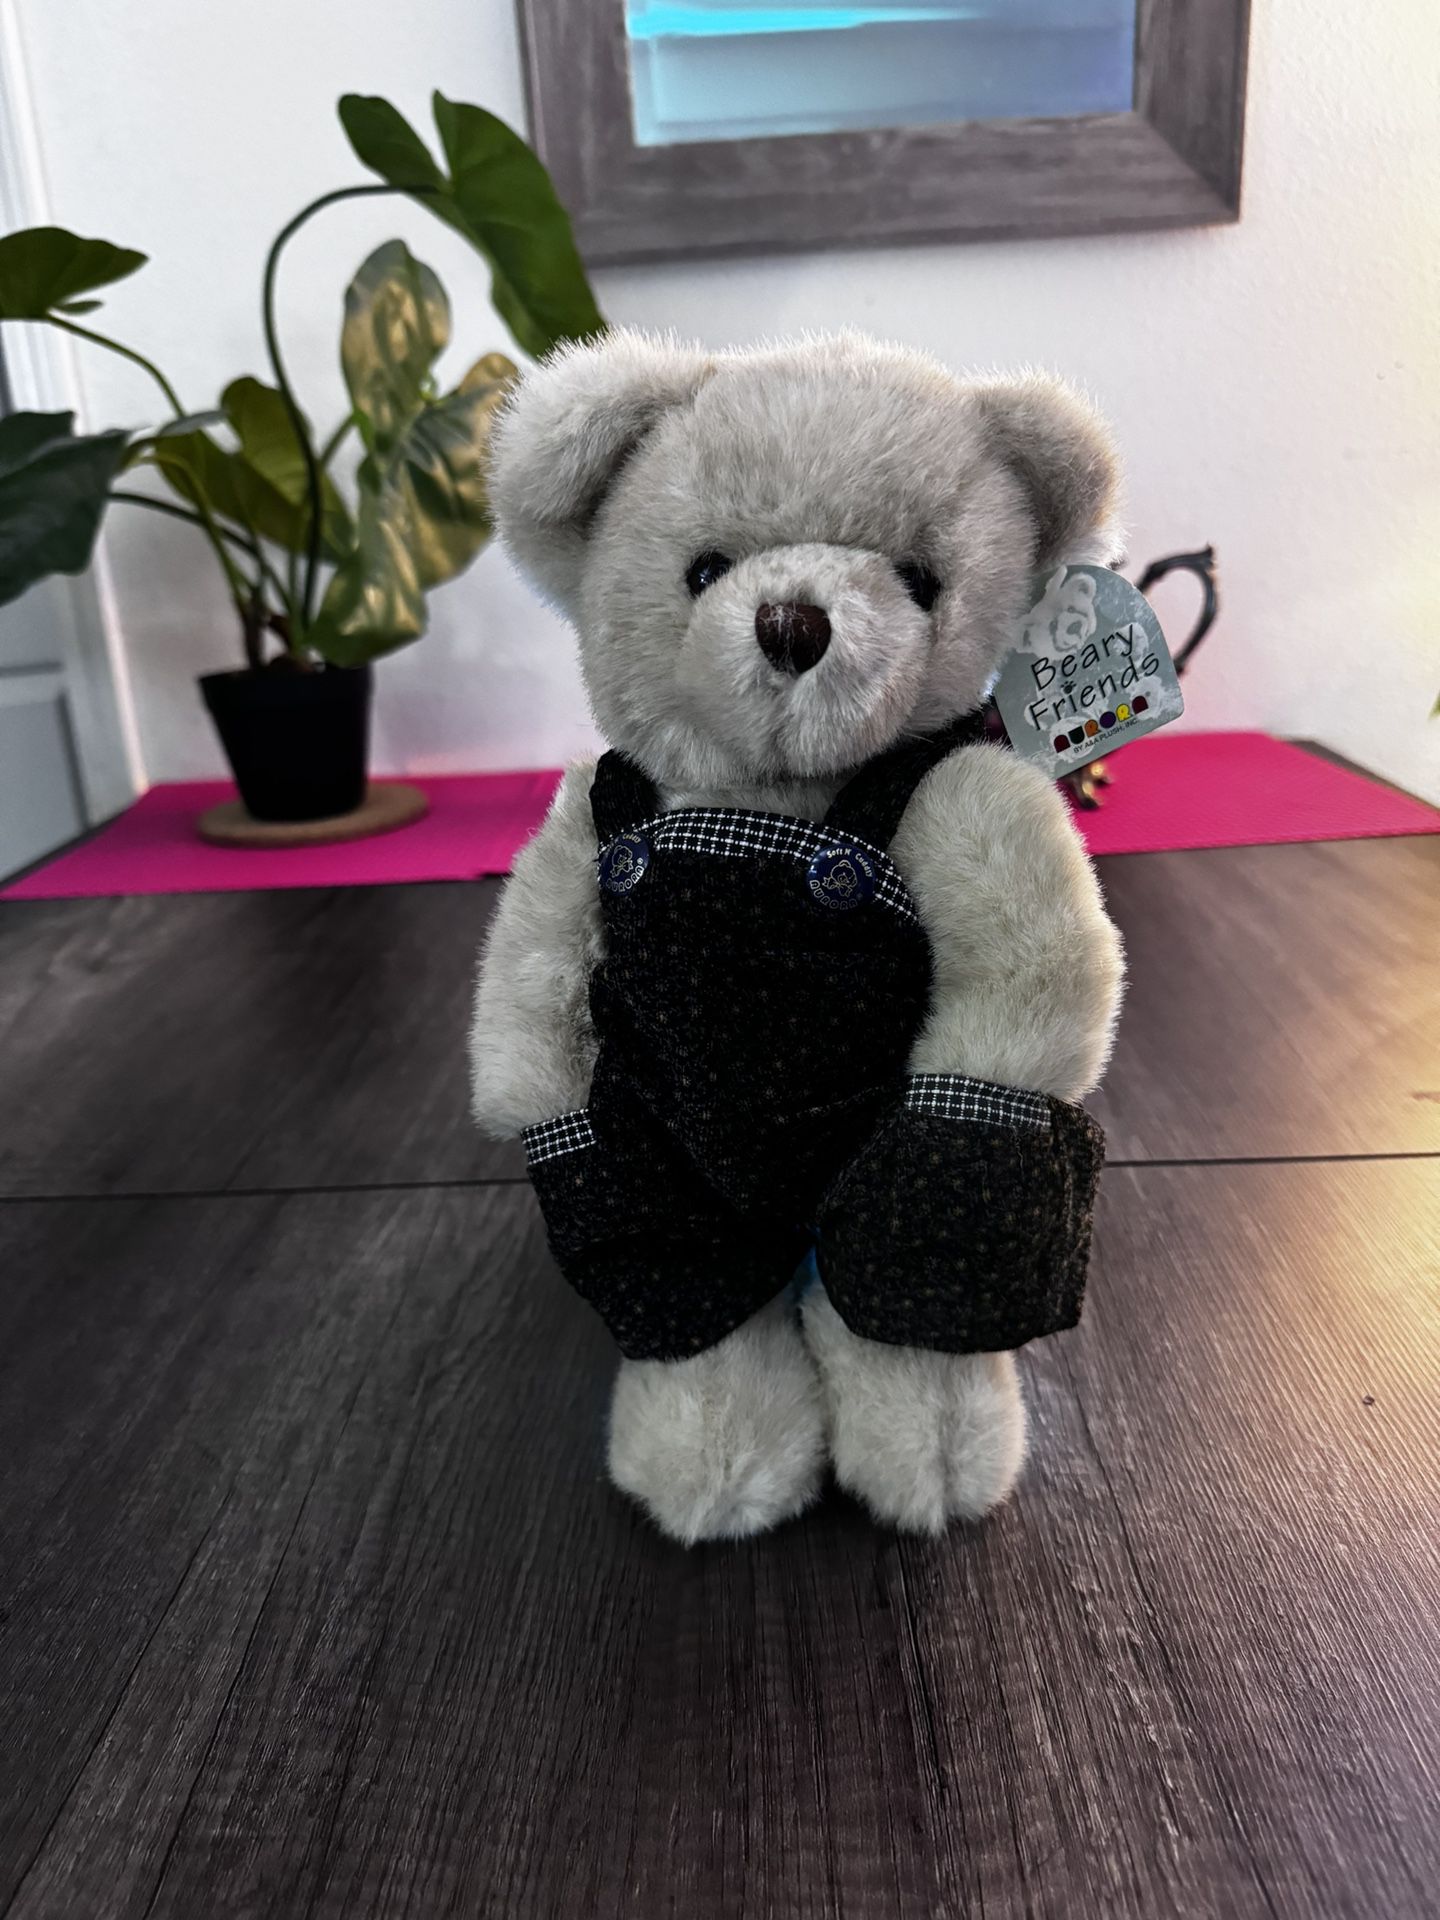 A&A Aurora Teddy Bear Plush 11" Stuffed Animal To